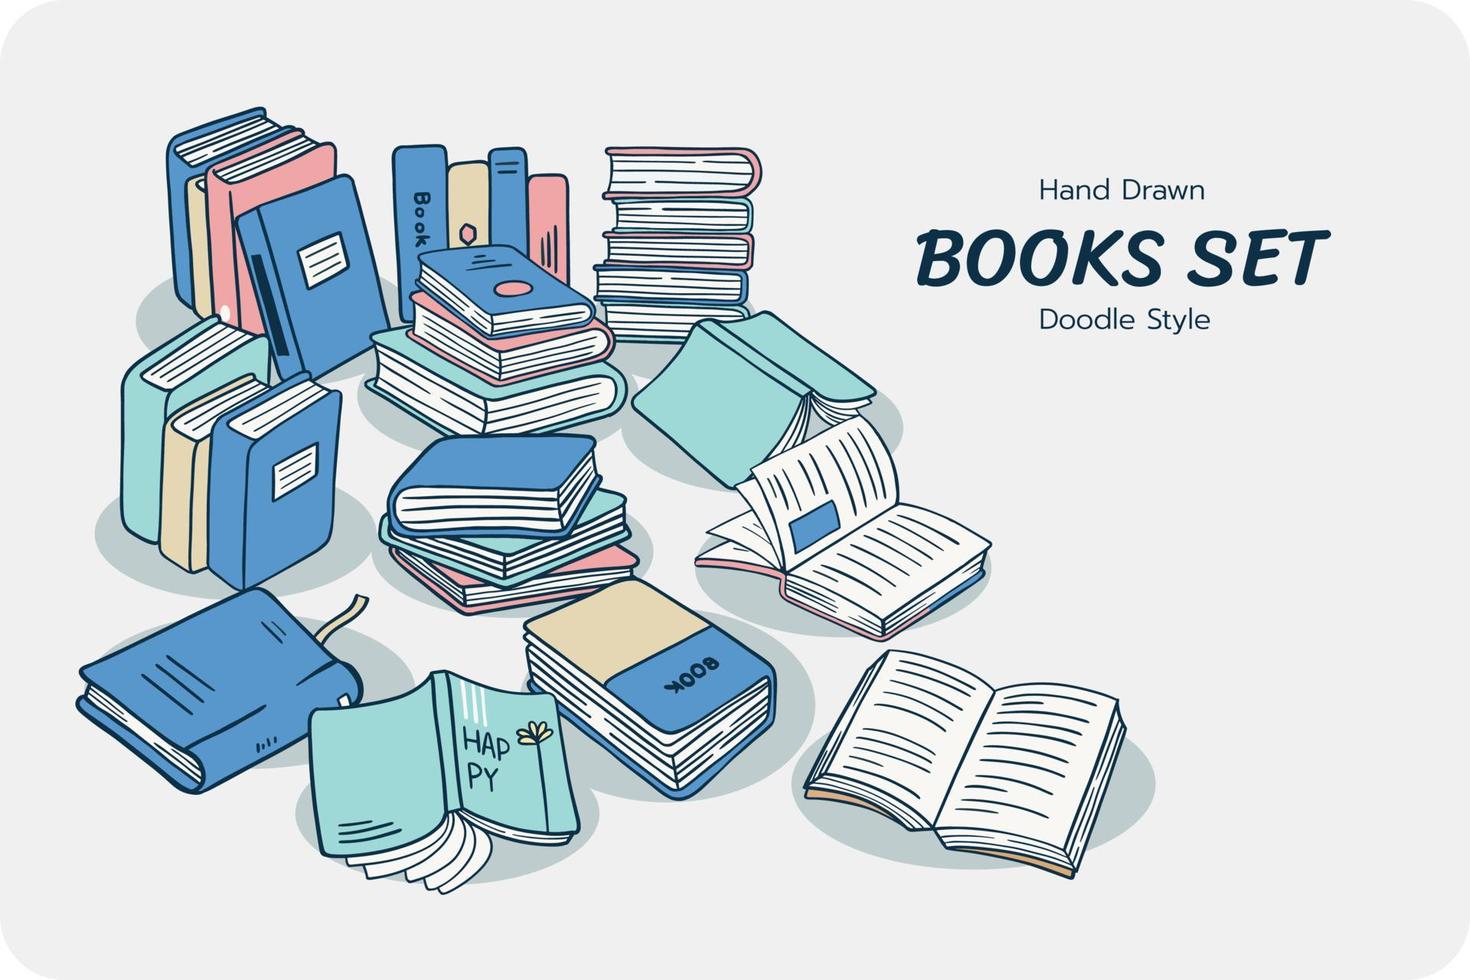 conjunto de libros dibujados a mano, estilo garabato, conjunto de libros en estilo de diseño plano. vector